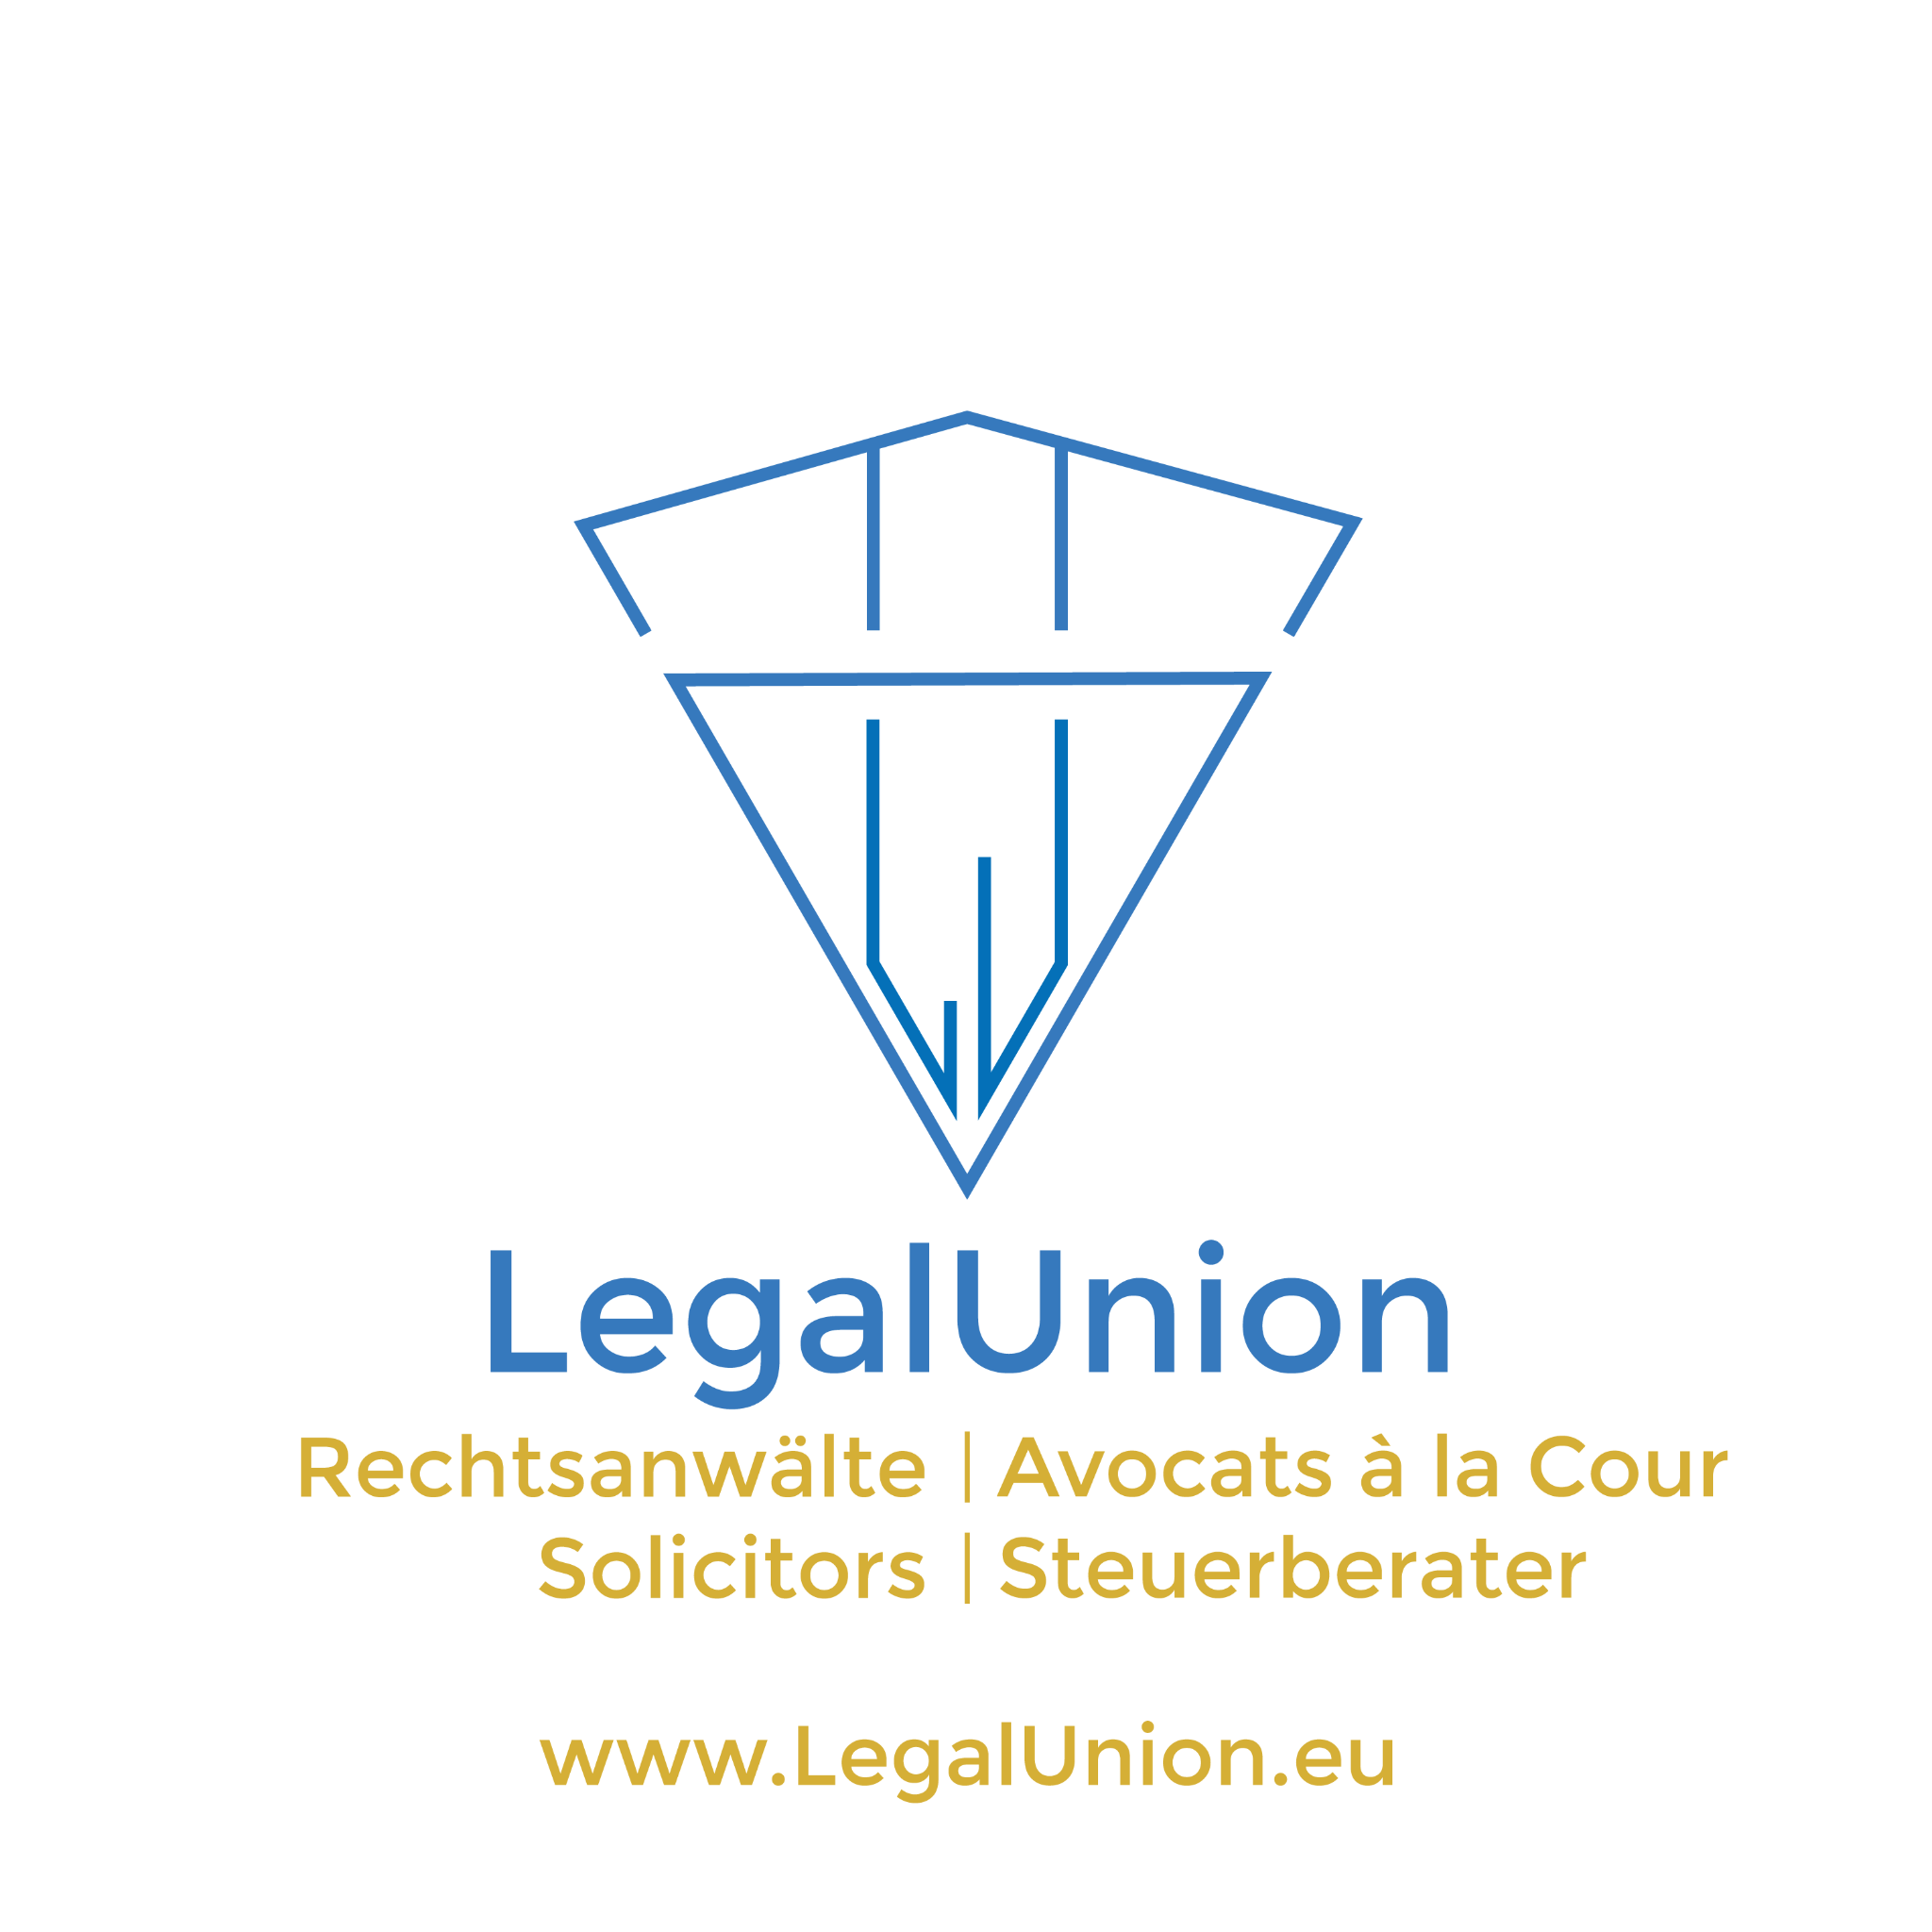 Legal Union Rechtsanwälte